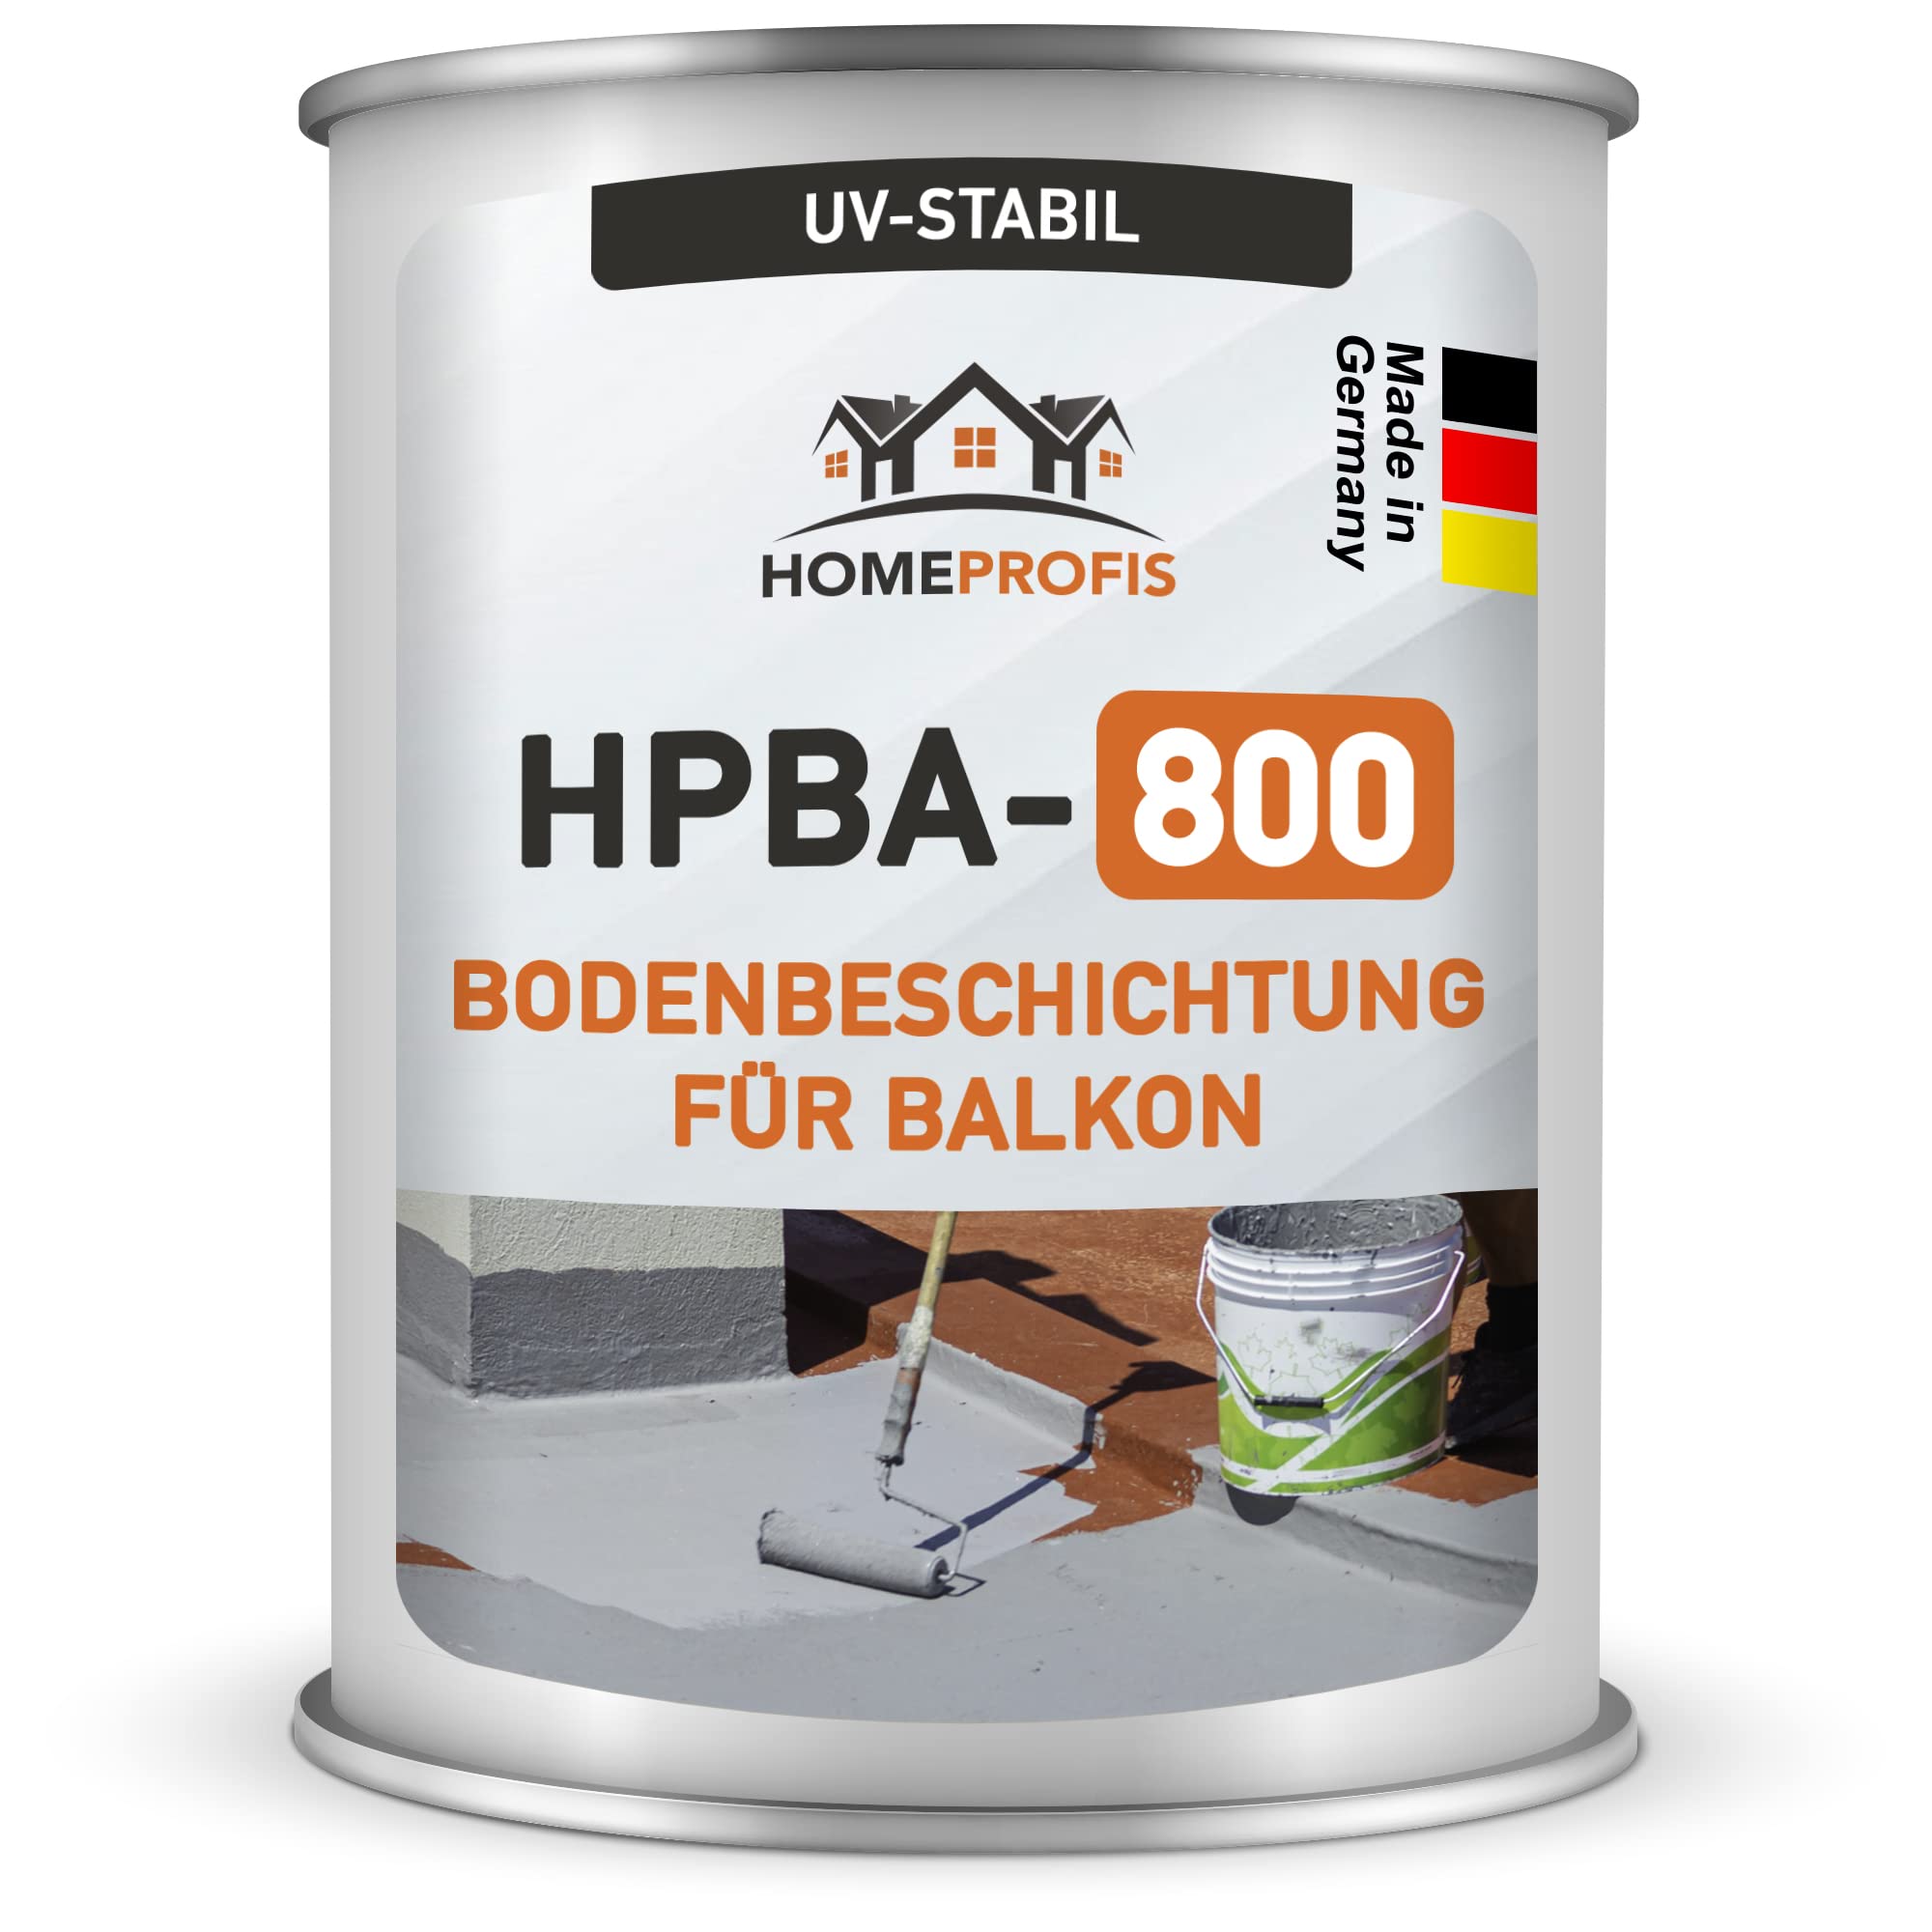 Home Profis® HPBA-800 matte UV-beständige 1K Bodenfarbe (12,5m²) für Balkon & Terrasse in RAL 7001 (Silbergrau) – Wasserdichte Bodenbeschichtung, Bodenlack, diffusionsgeschlossen